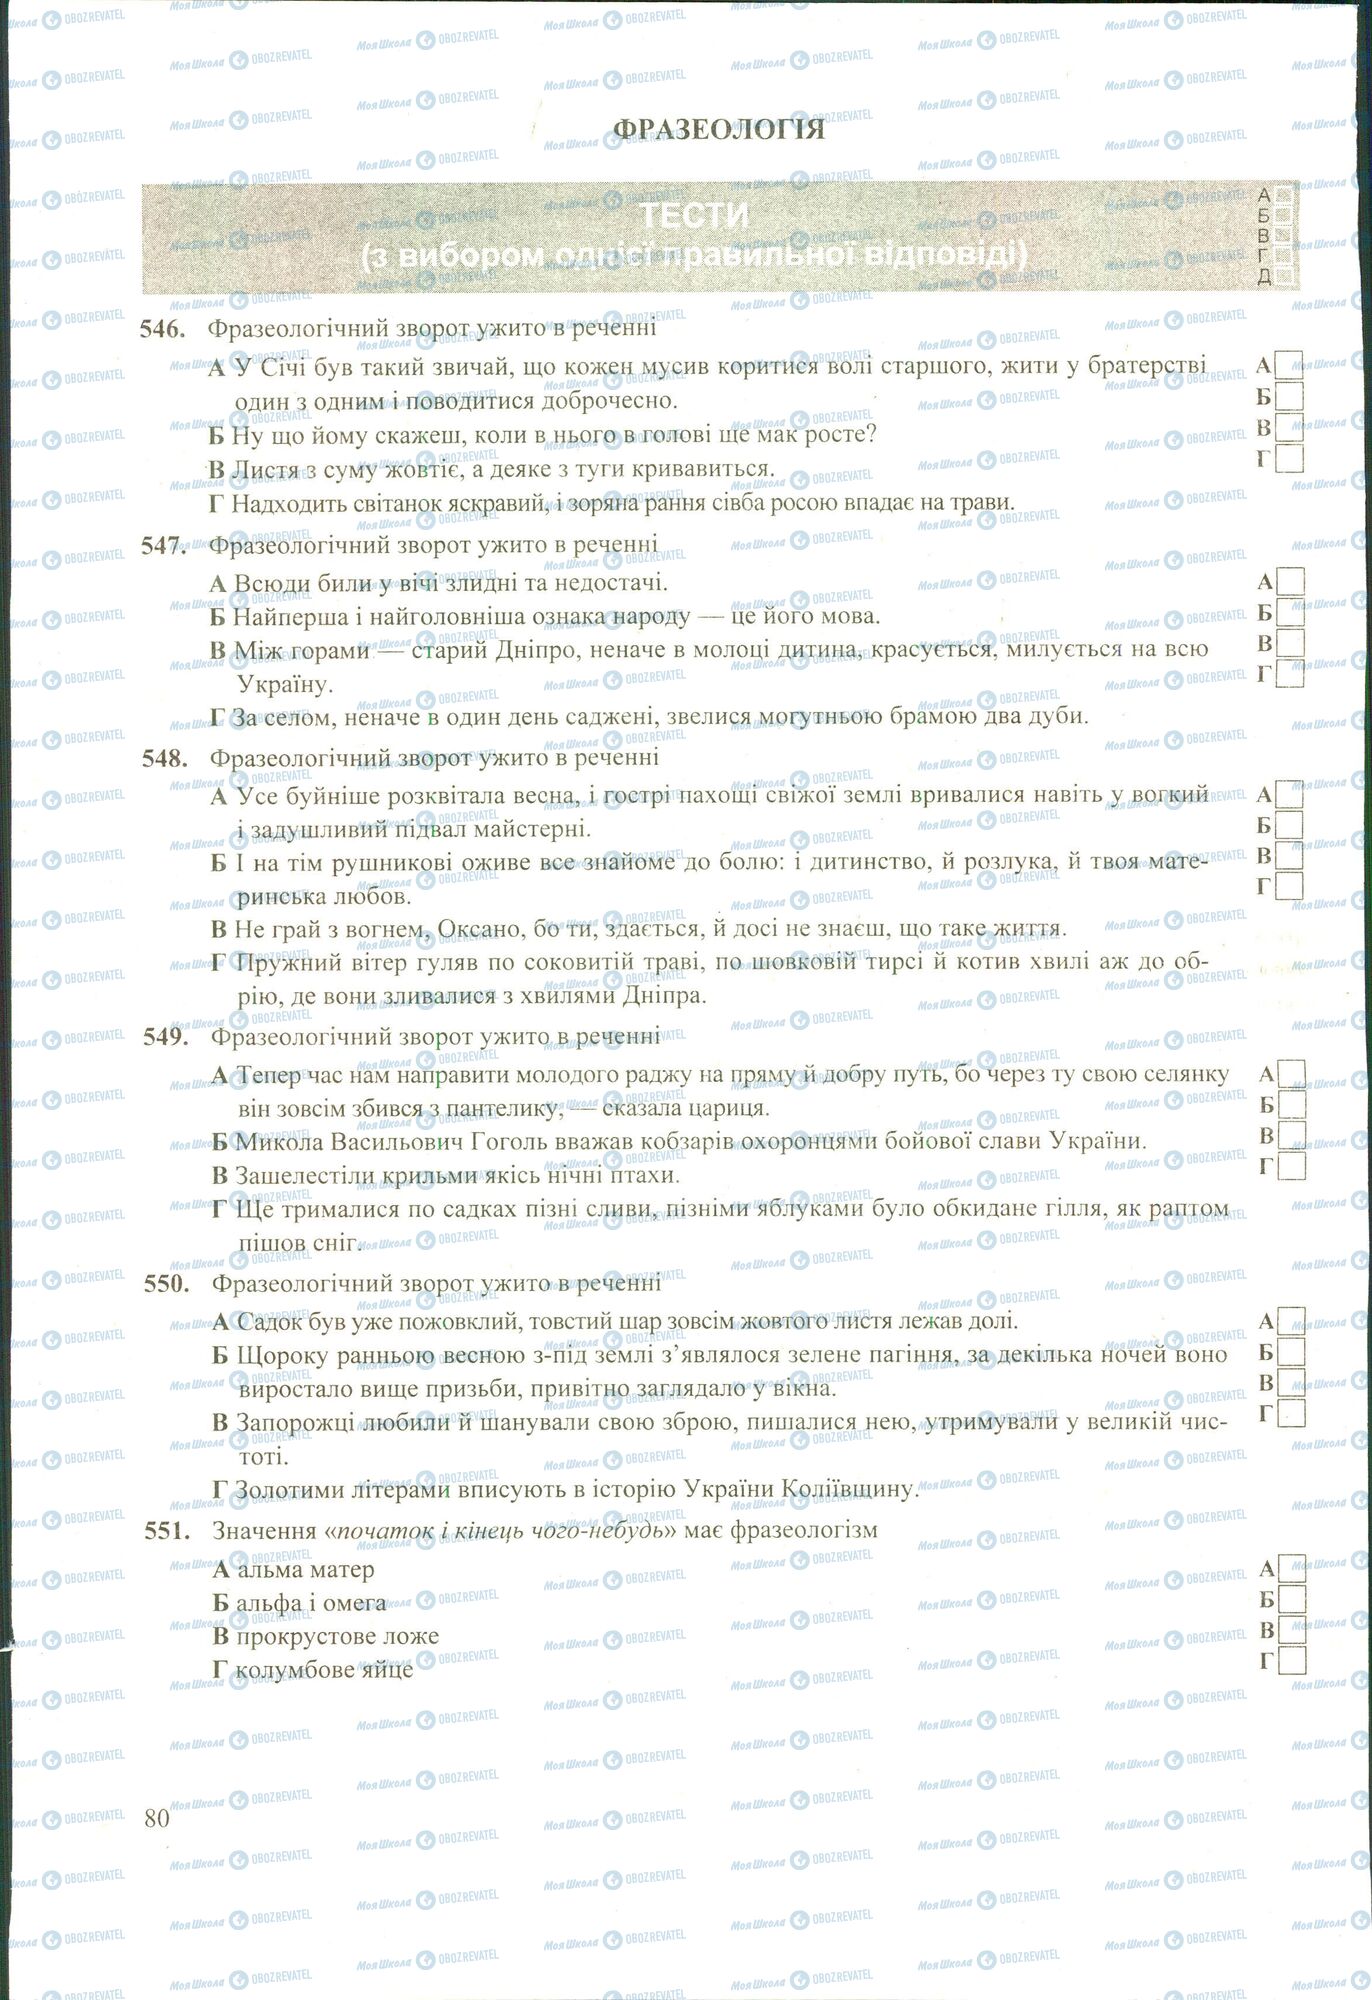 ЗНО Укр мова 11 класс страница 546-551